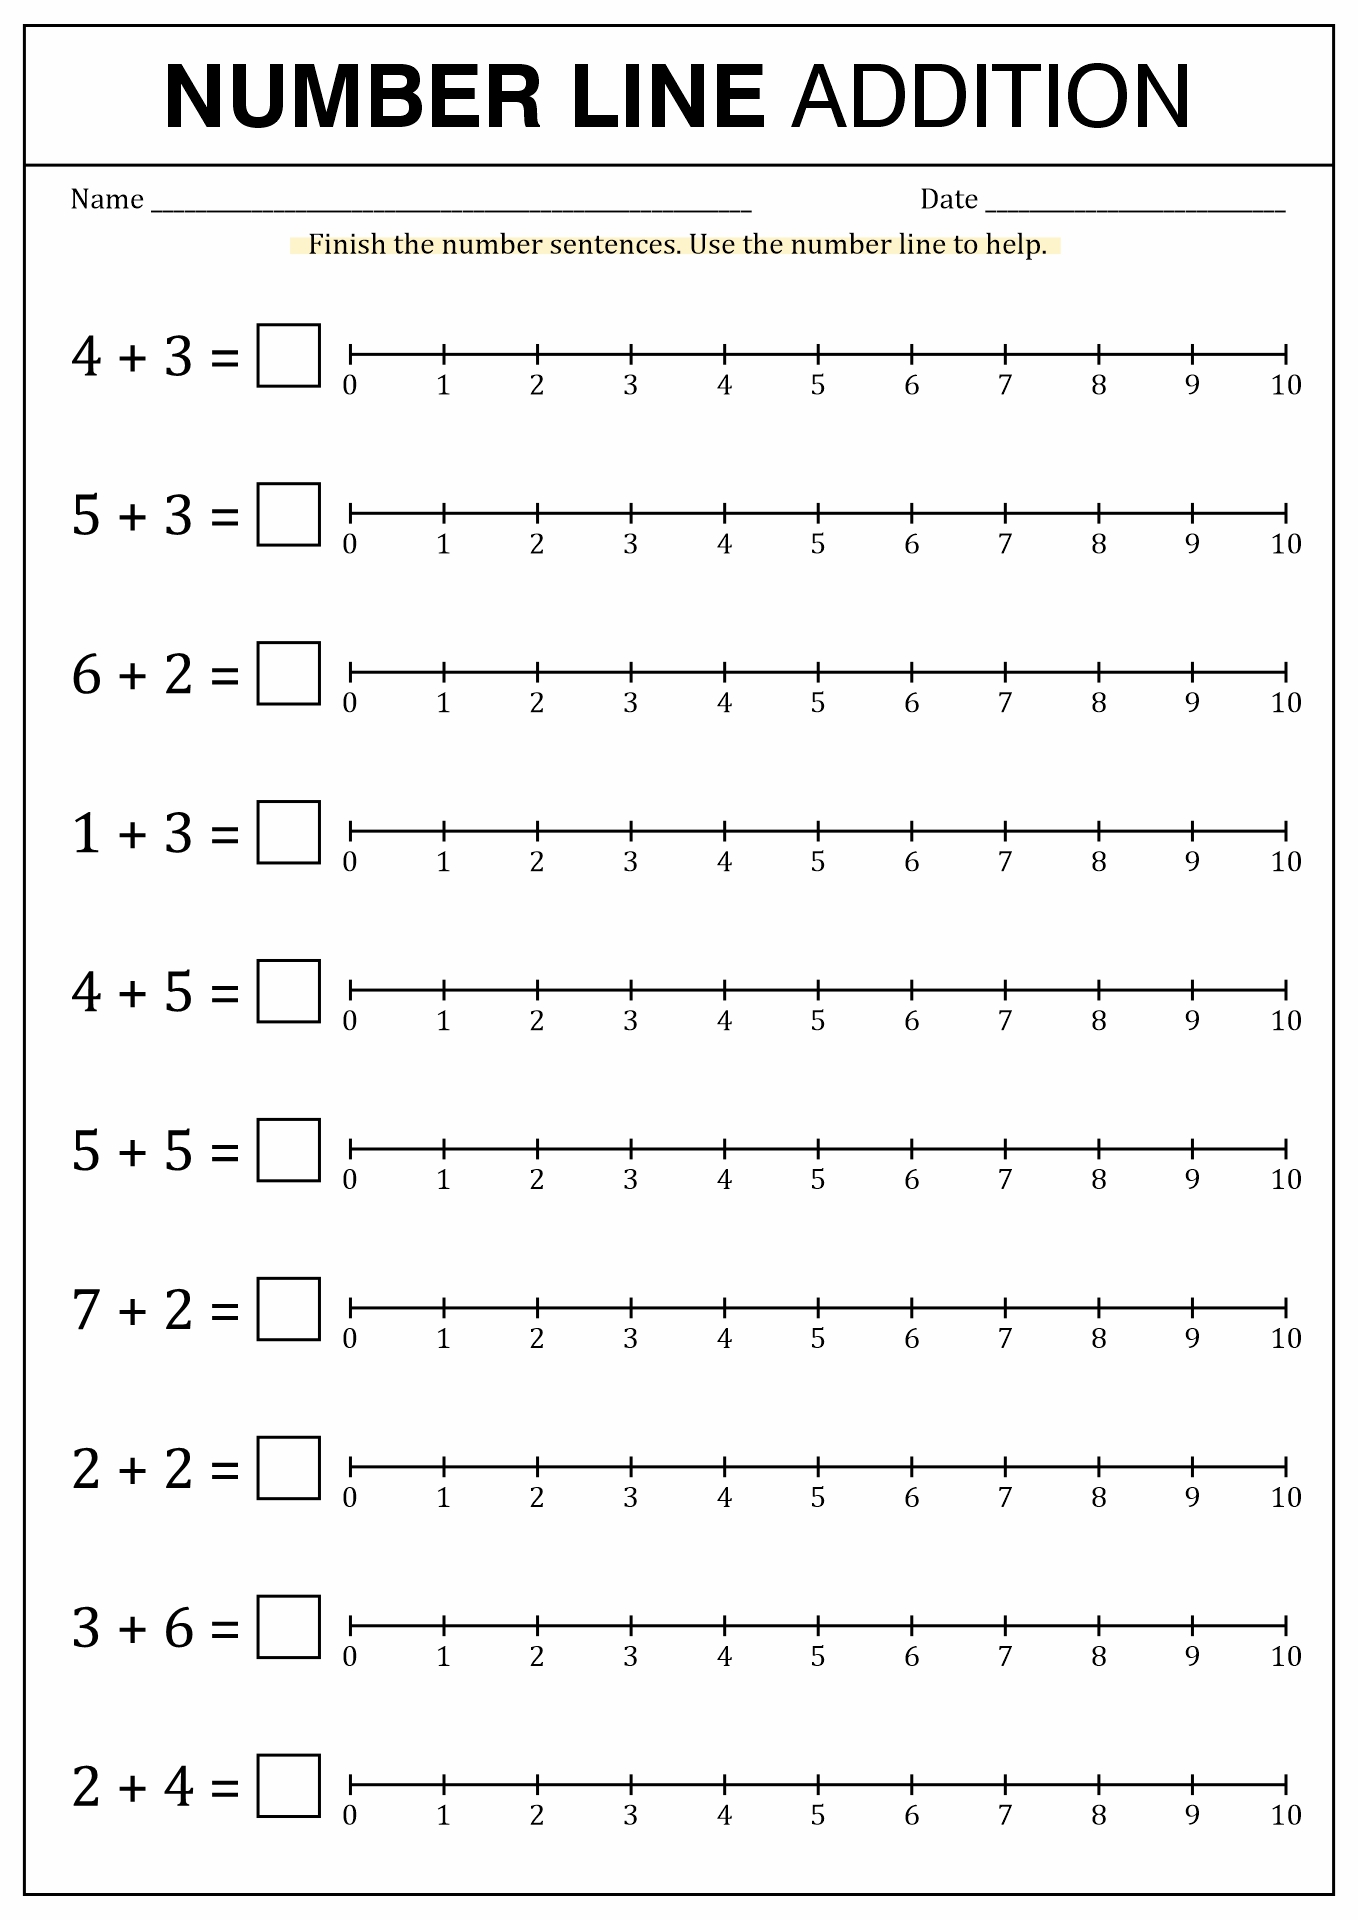 Printable Number Line Worksheet Image